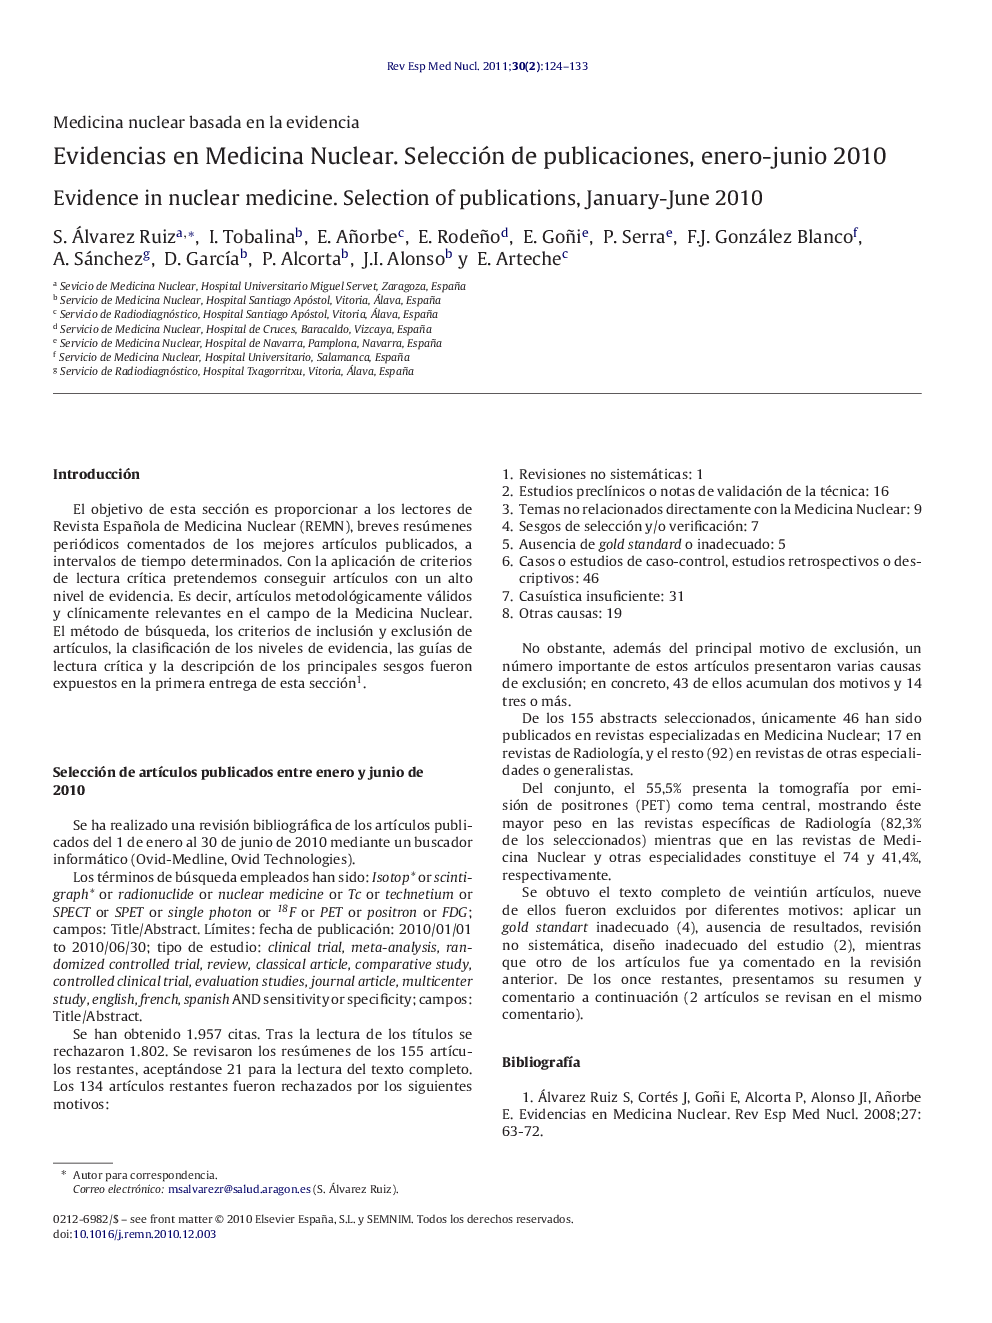 EVIDENCIAS EN MEDICINA NUCLEAR. Selección de publicaciones, Enero-Junio 2010